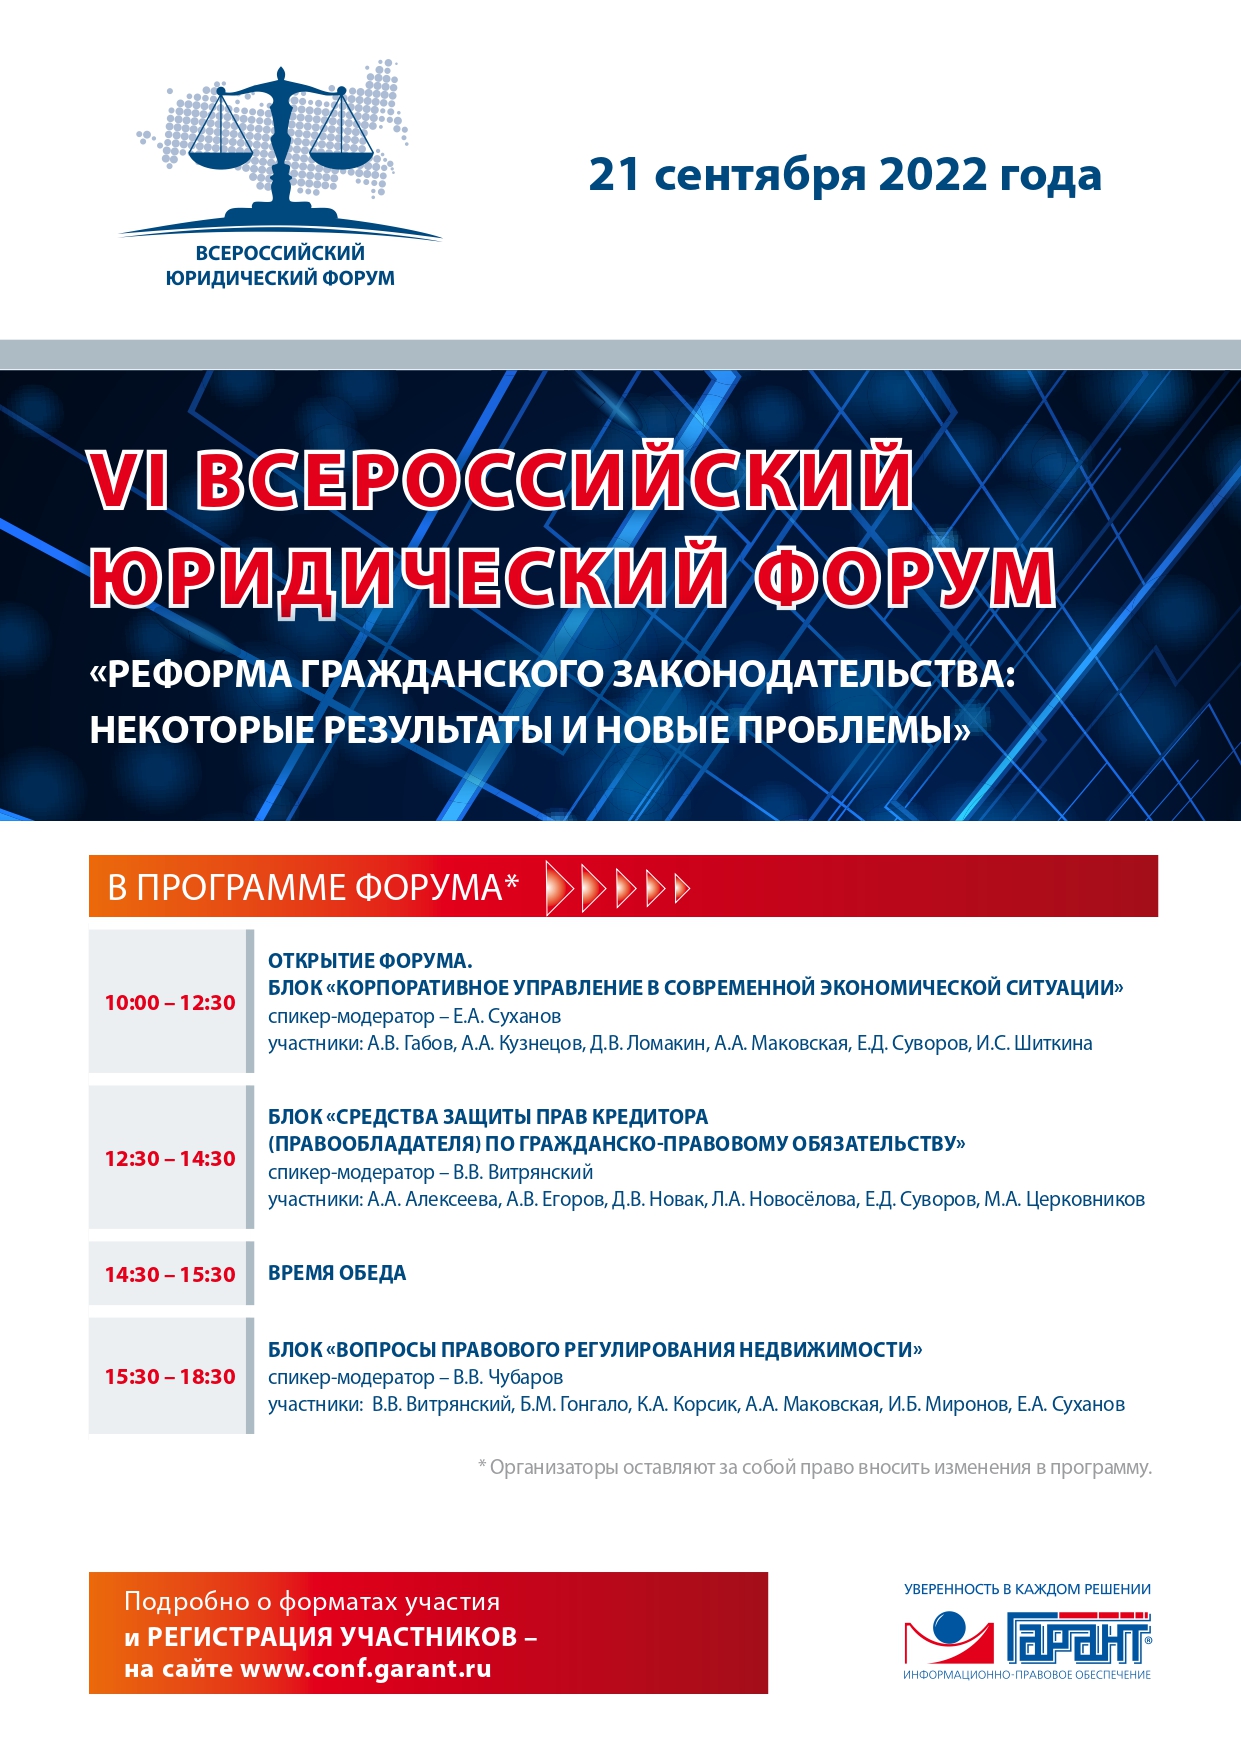 VI Всероссийский юридический форум 